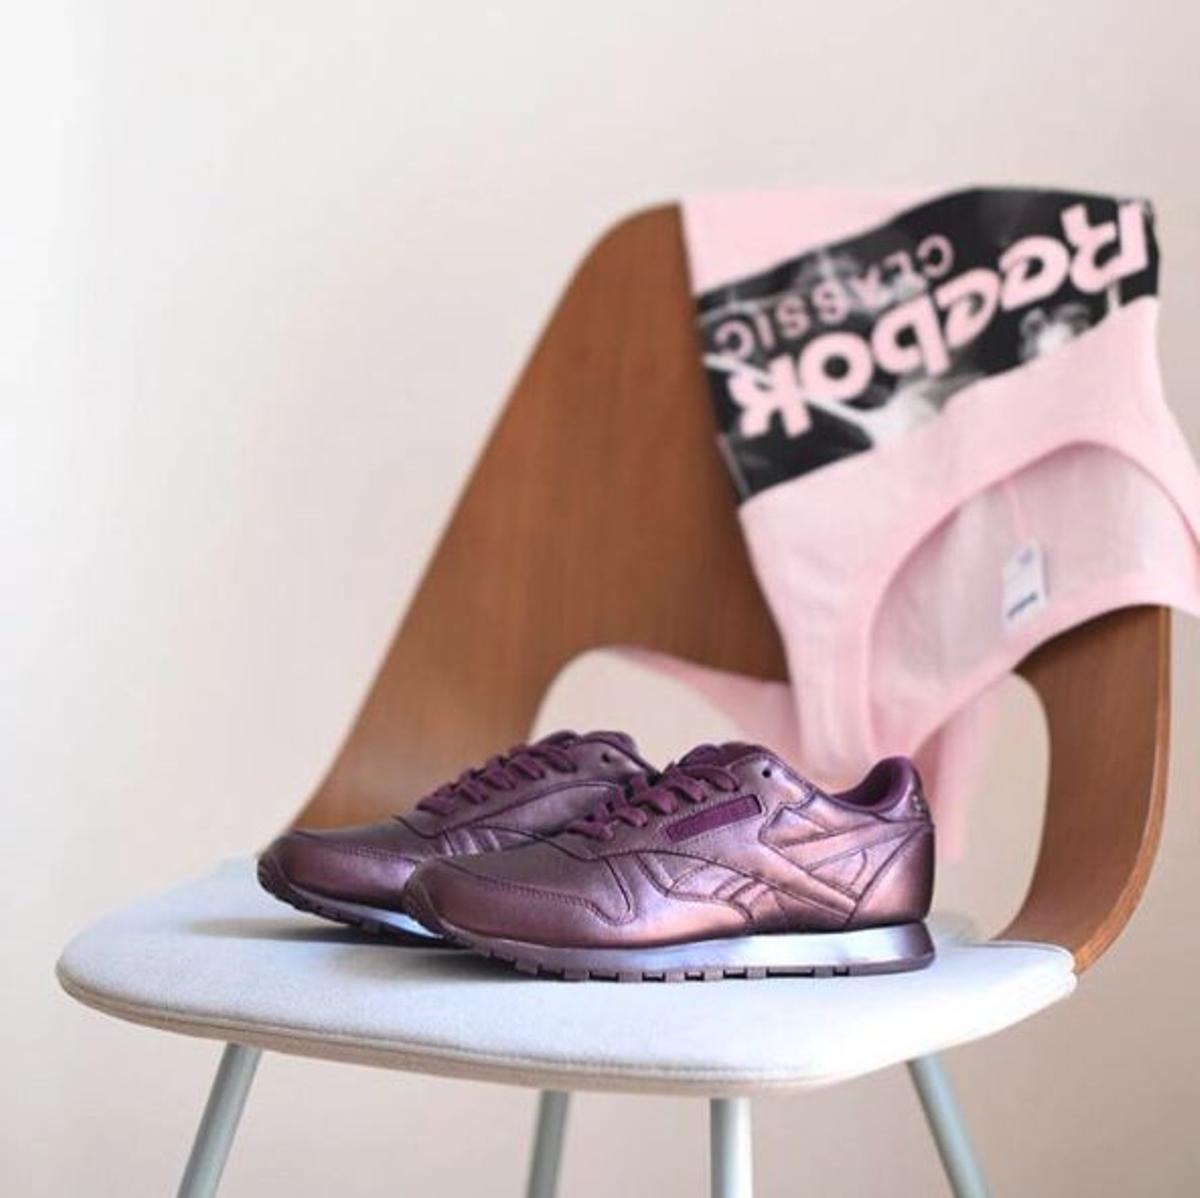 Las zapatillas rosas metalizadas de Reebok